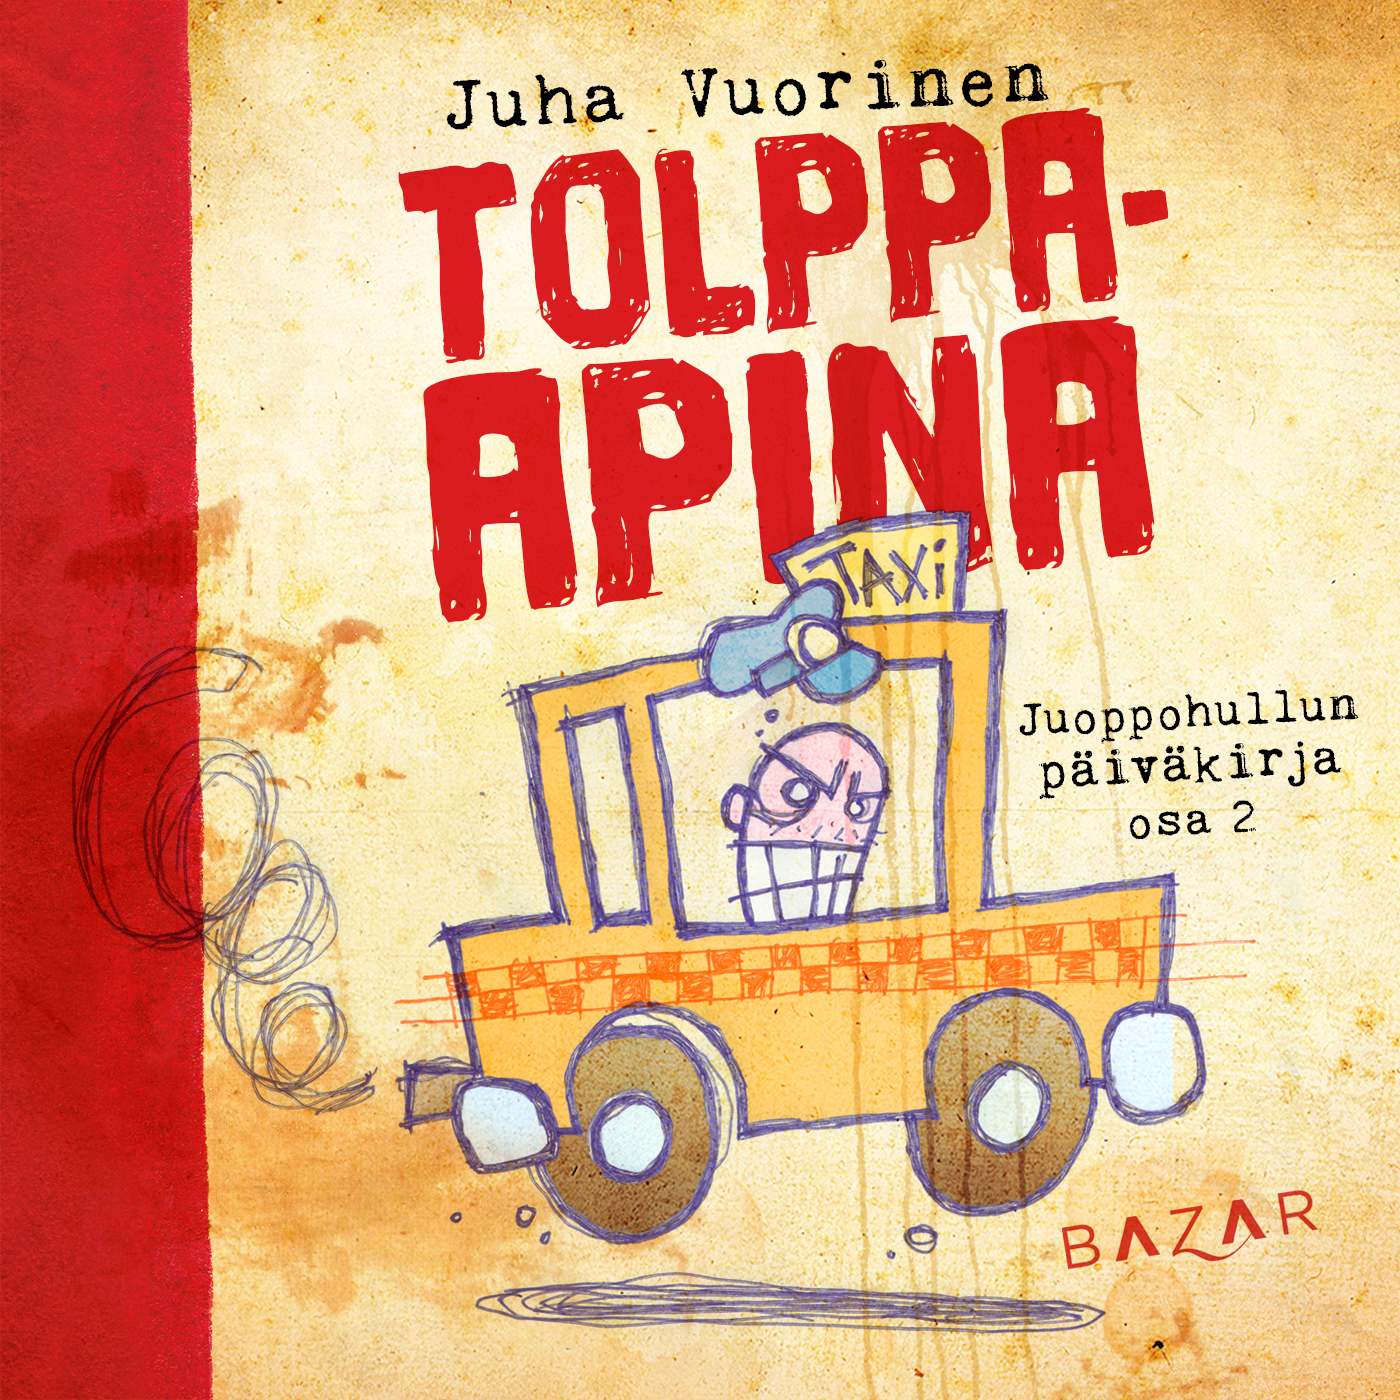 Vuorinen, Juha - Tolppa-apina, äänikirja